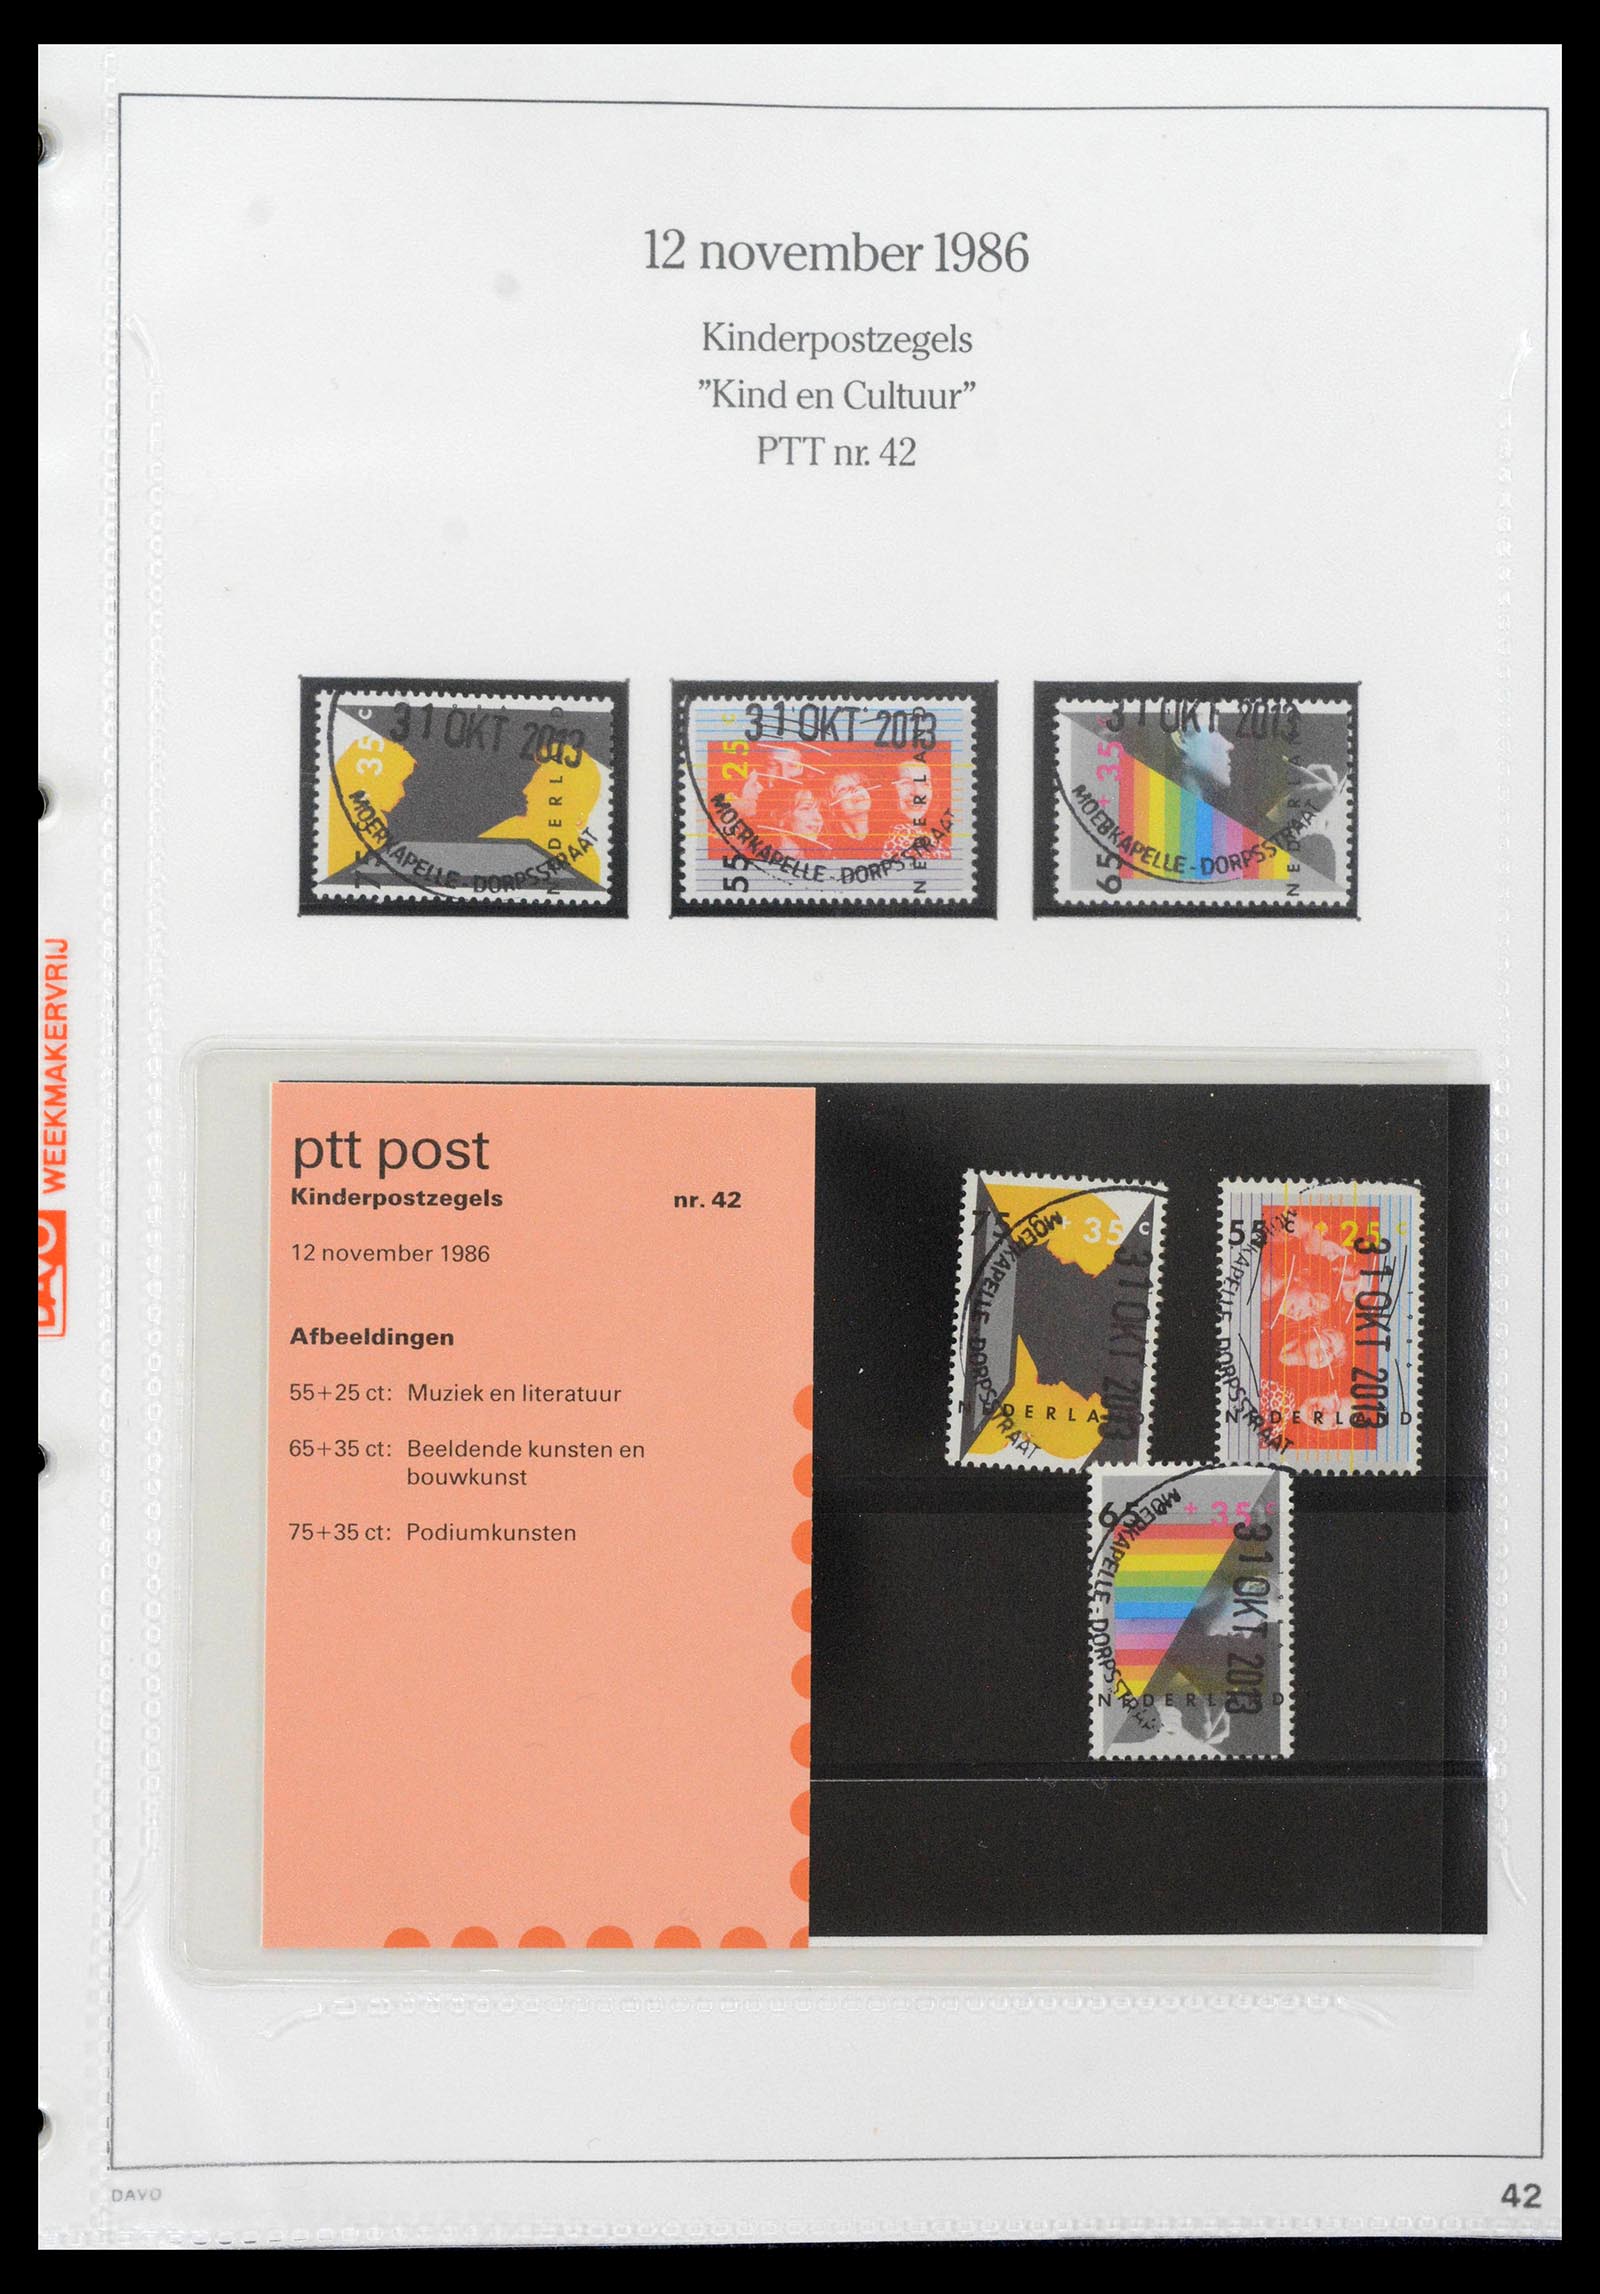 39121 0042 - Stamp collection 39121 Netherlands presentationpacks 1982-2001.